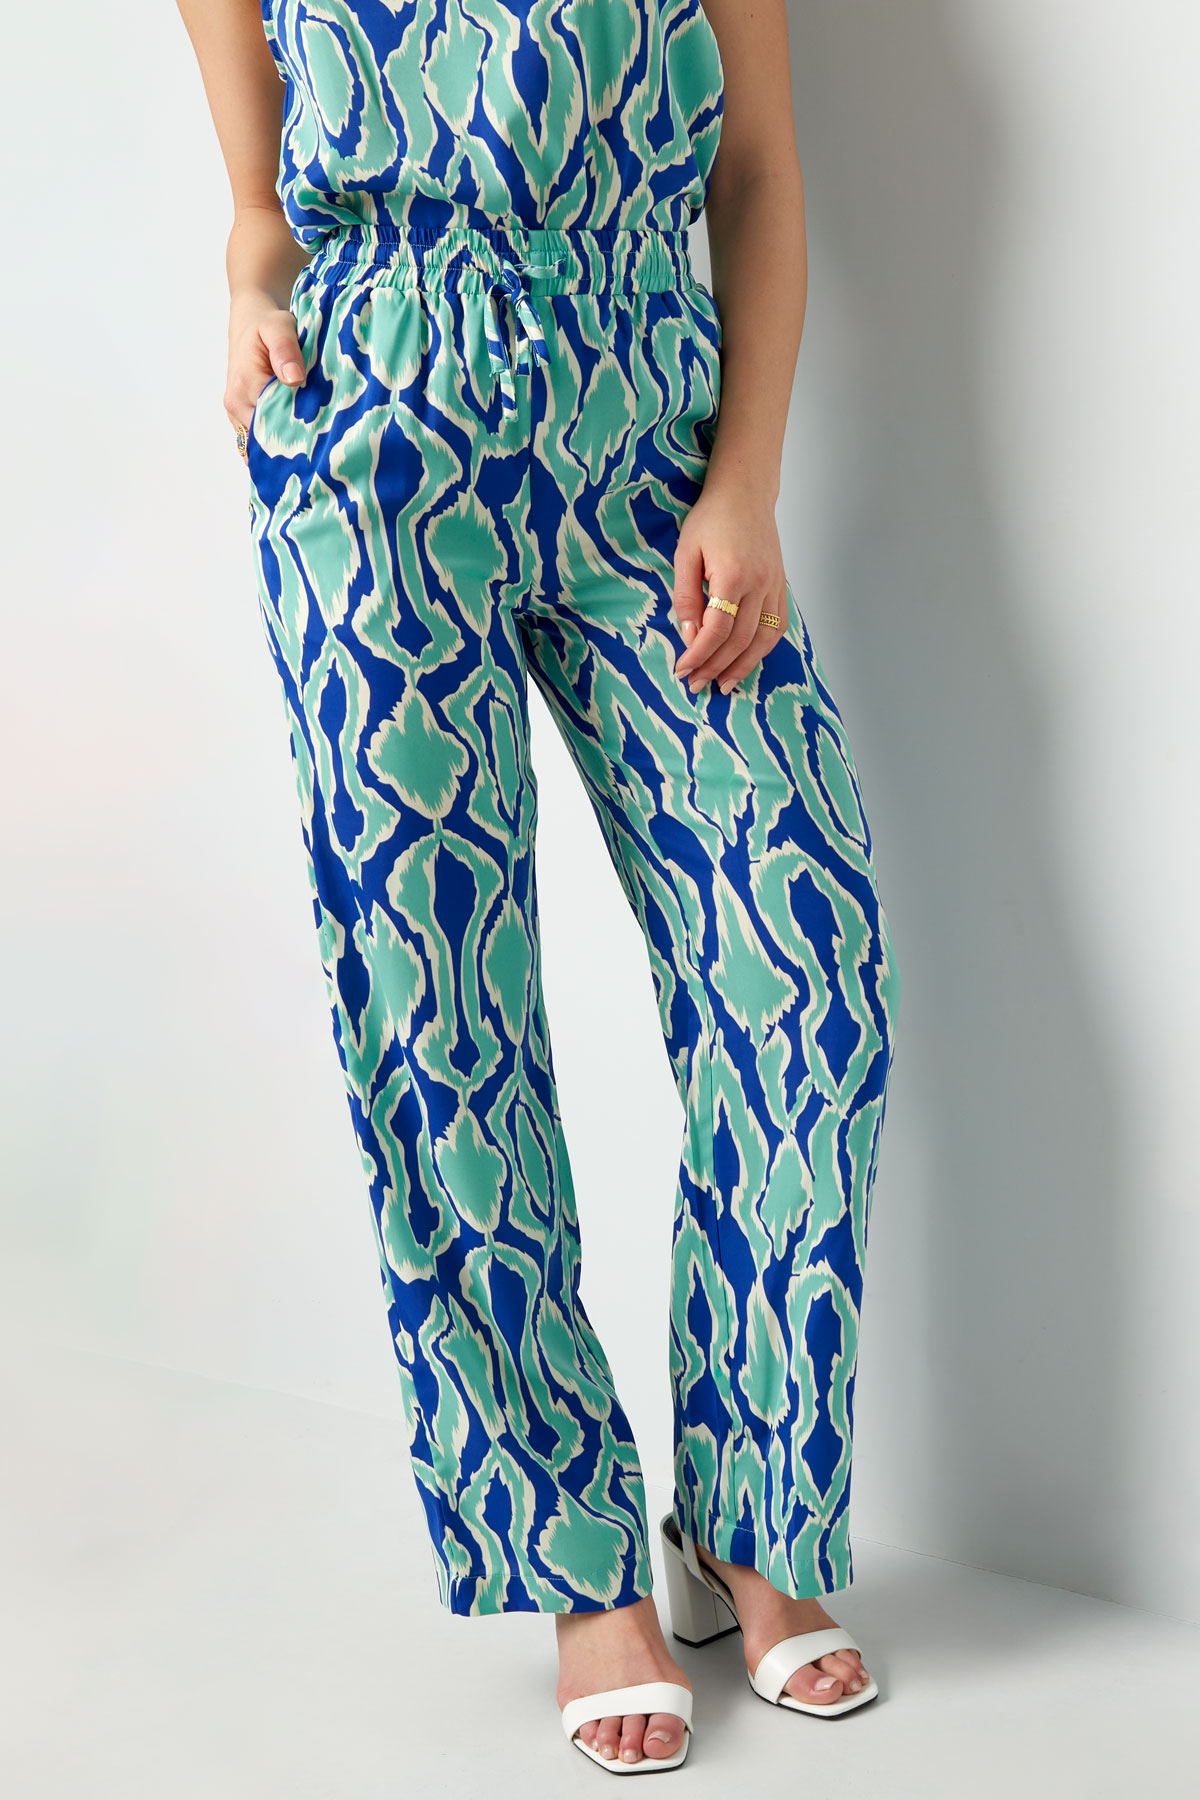 Renkli baskılı pantolon - mavi/yeşil  Resim2